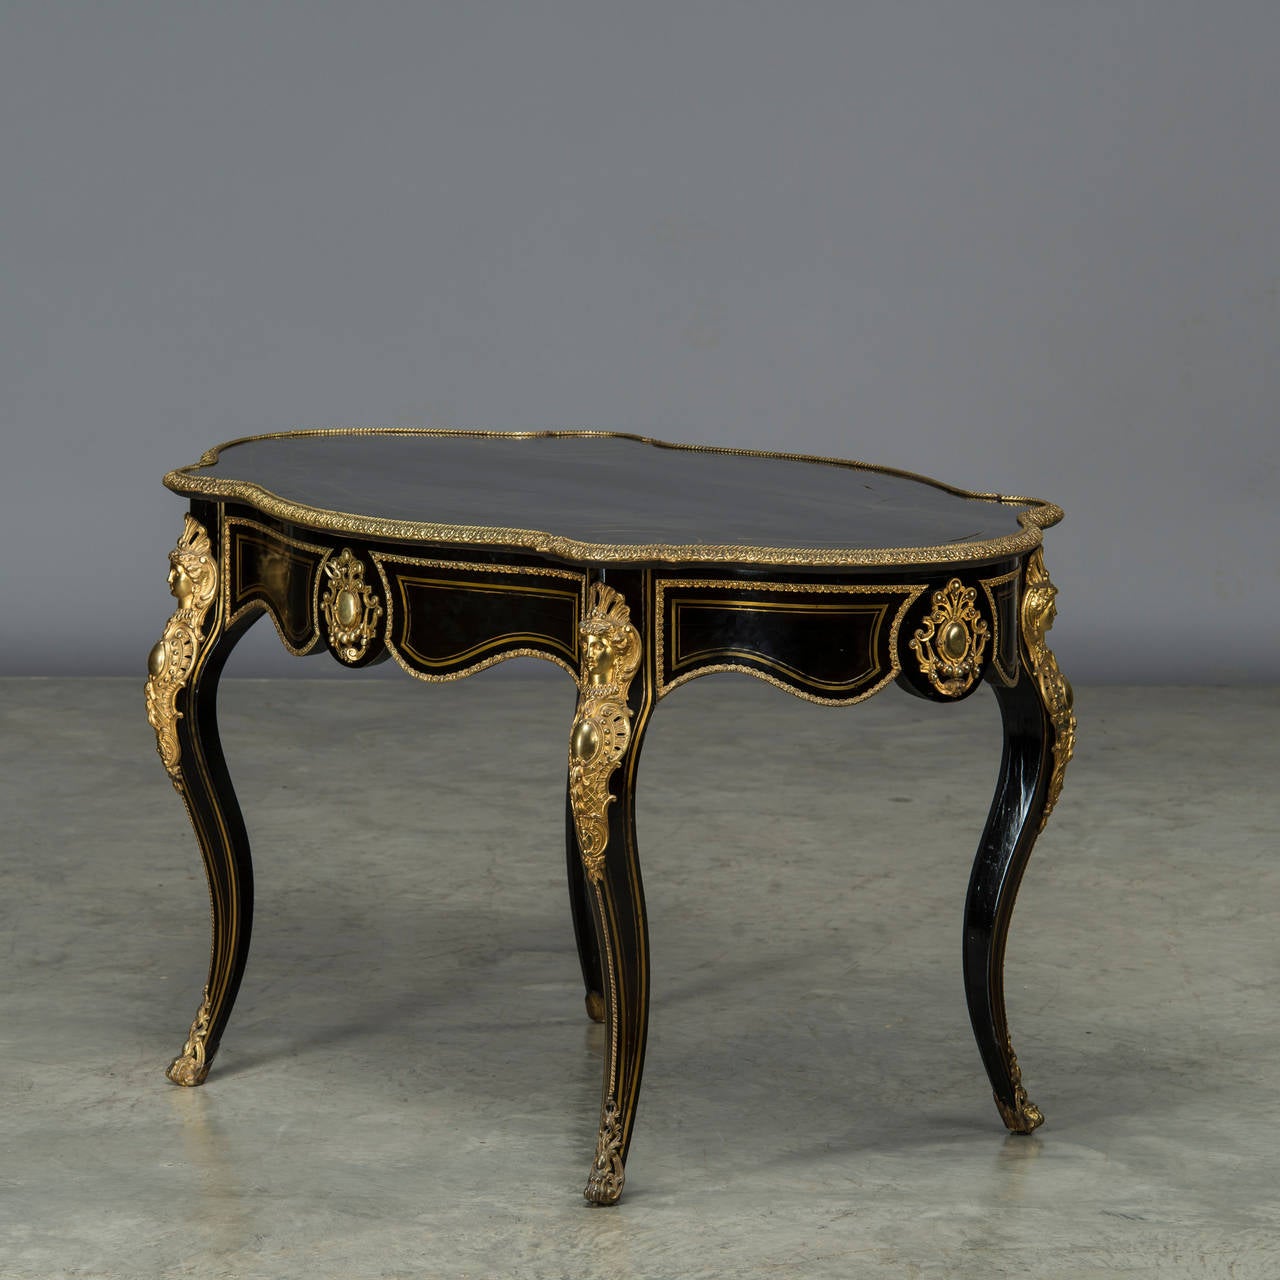 Table Napoléon III en bois ébonisé avec montures en ébène et bronze doré et incrustations en laiton. Un grand tiroir.
Fabriqué avec un grand savoir-faire. 

France, 1850-1870.